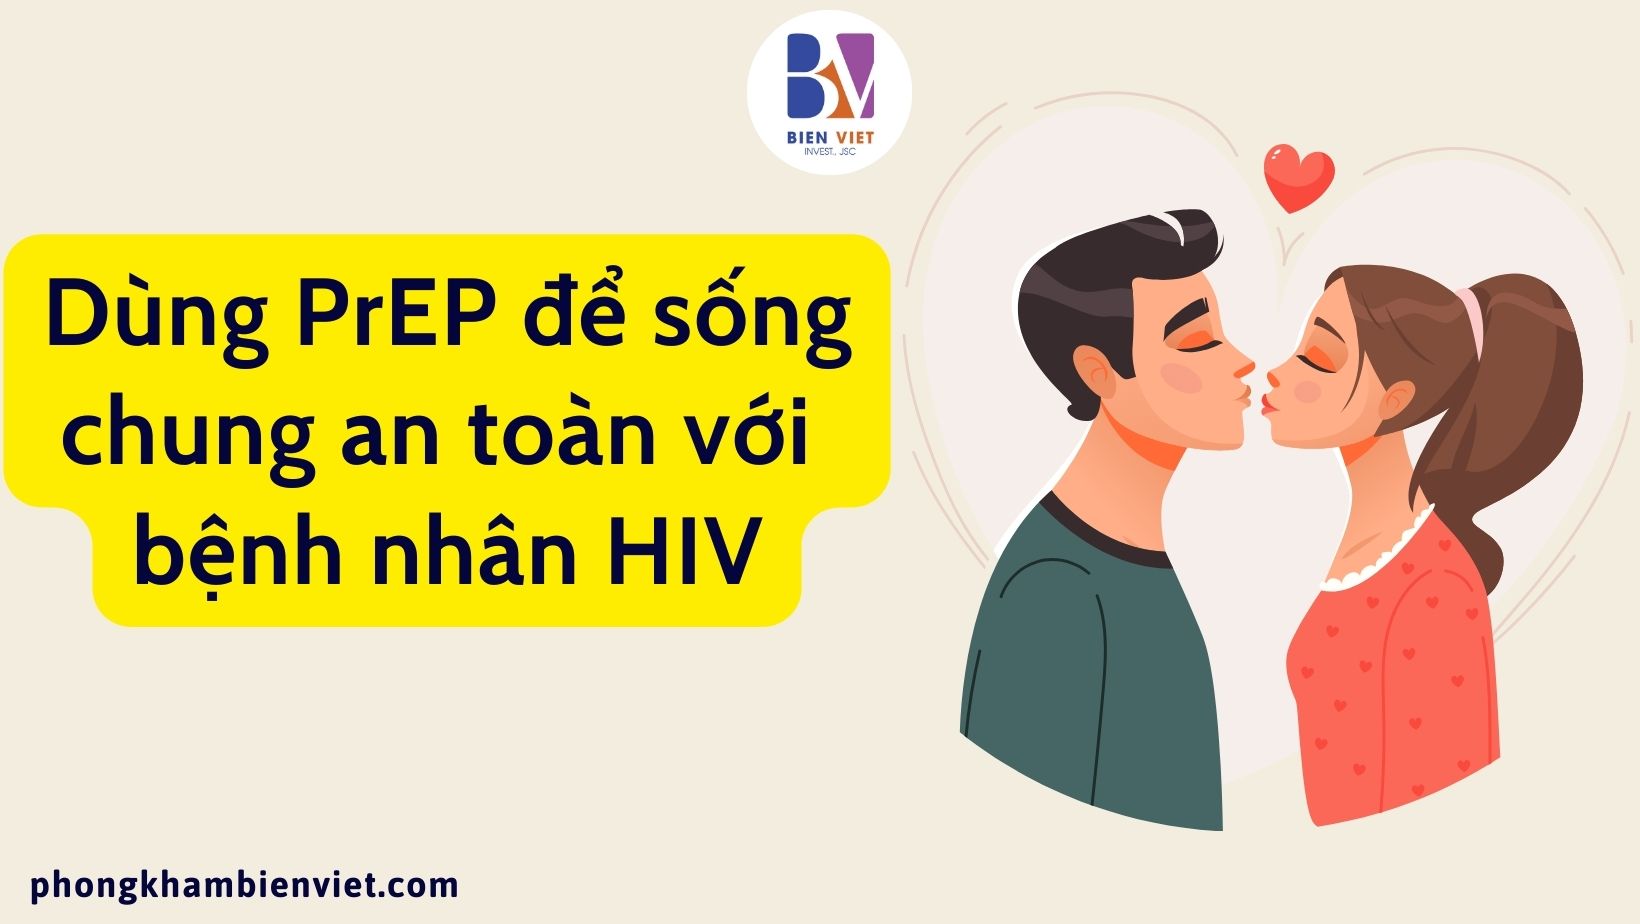 Dùng PrEP để sống chung an toàn với bệnh nhân HIV